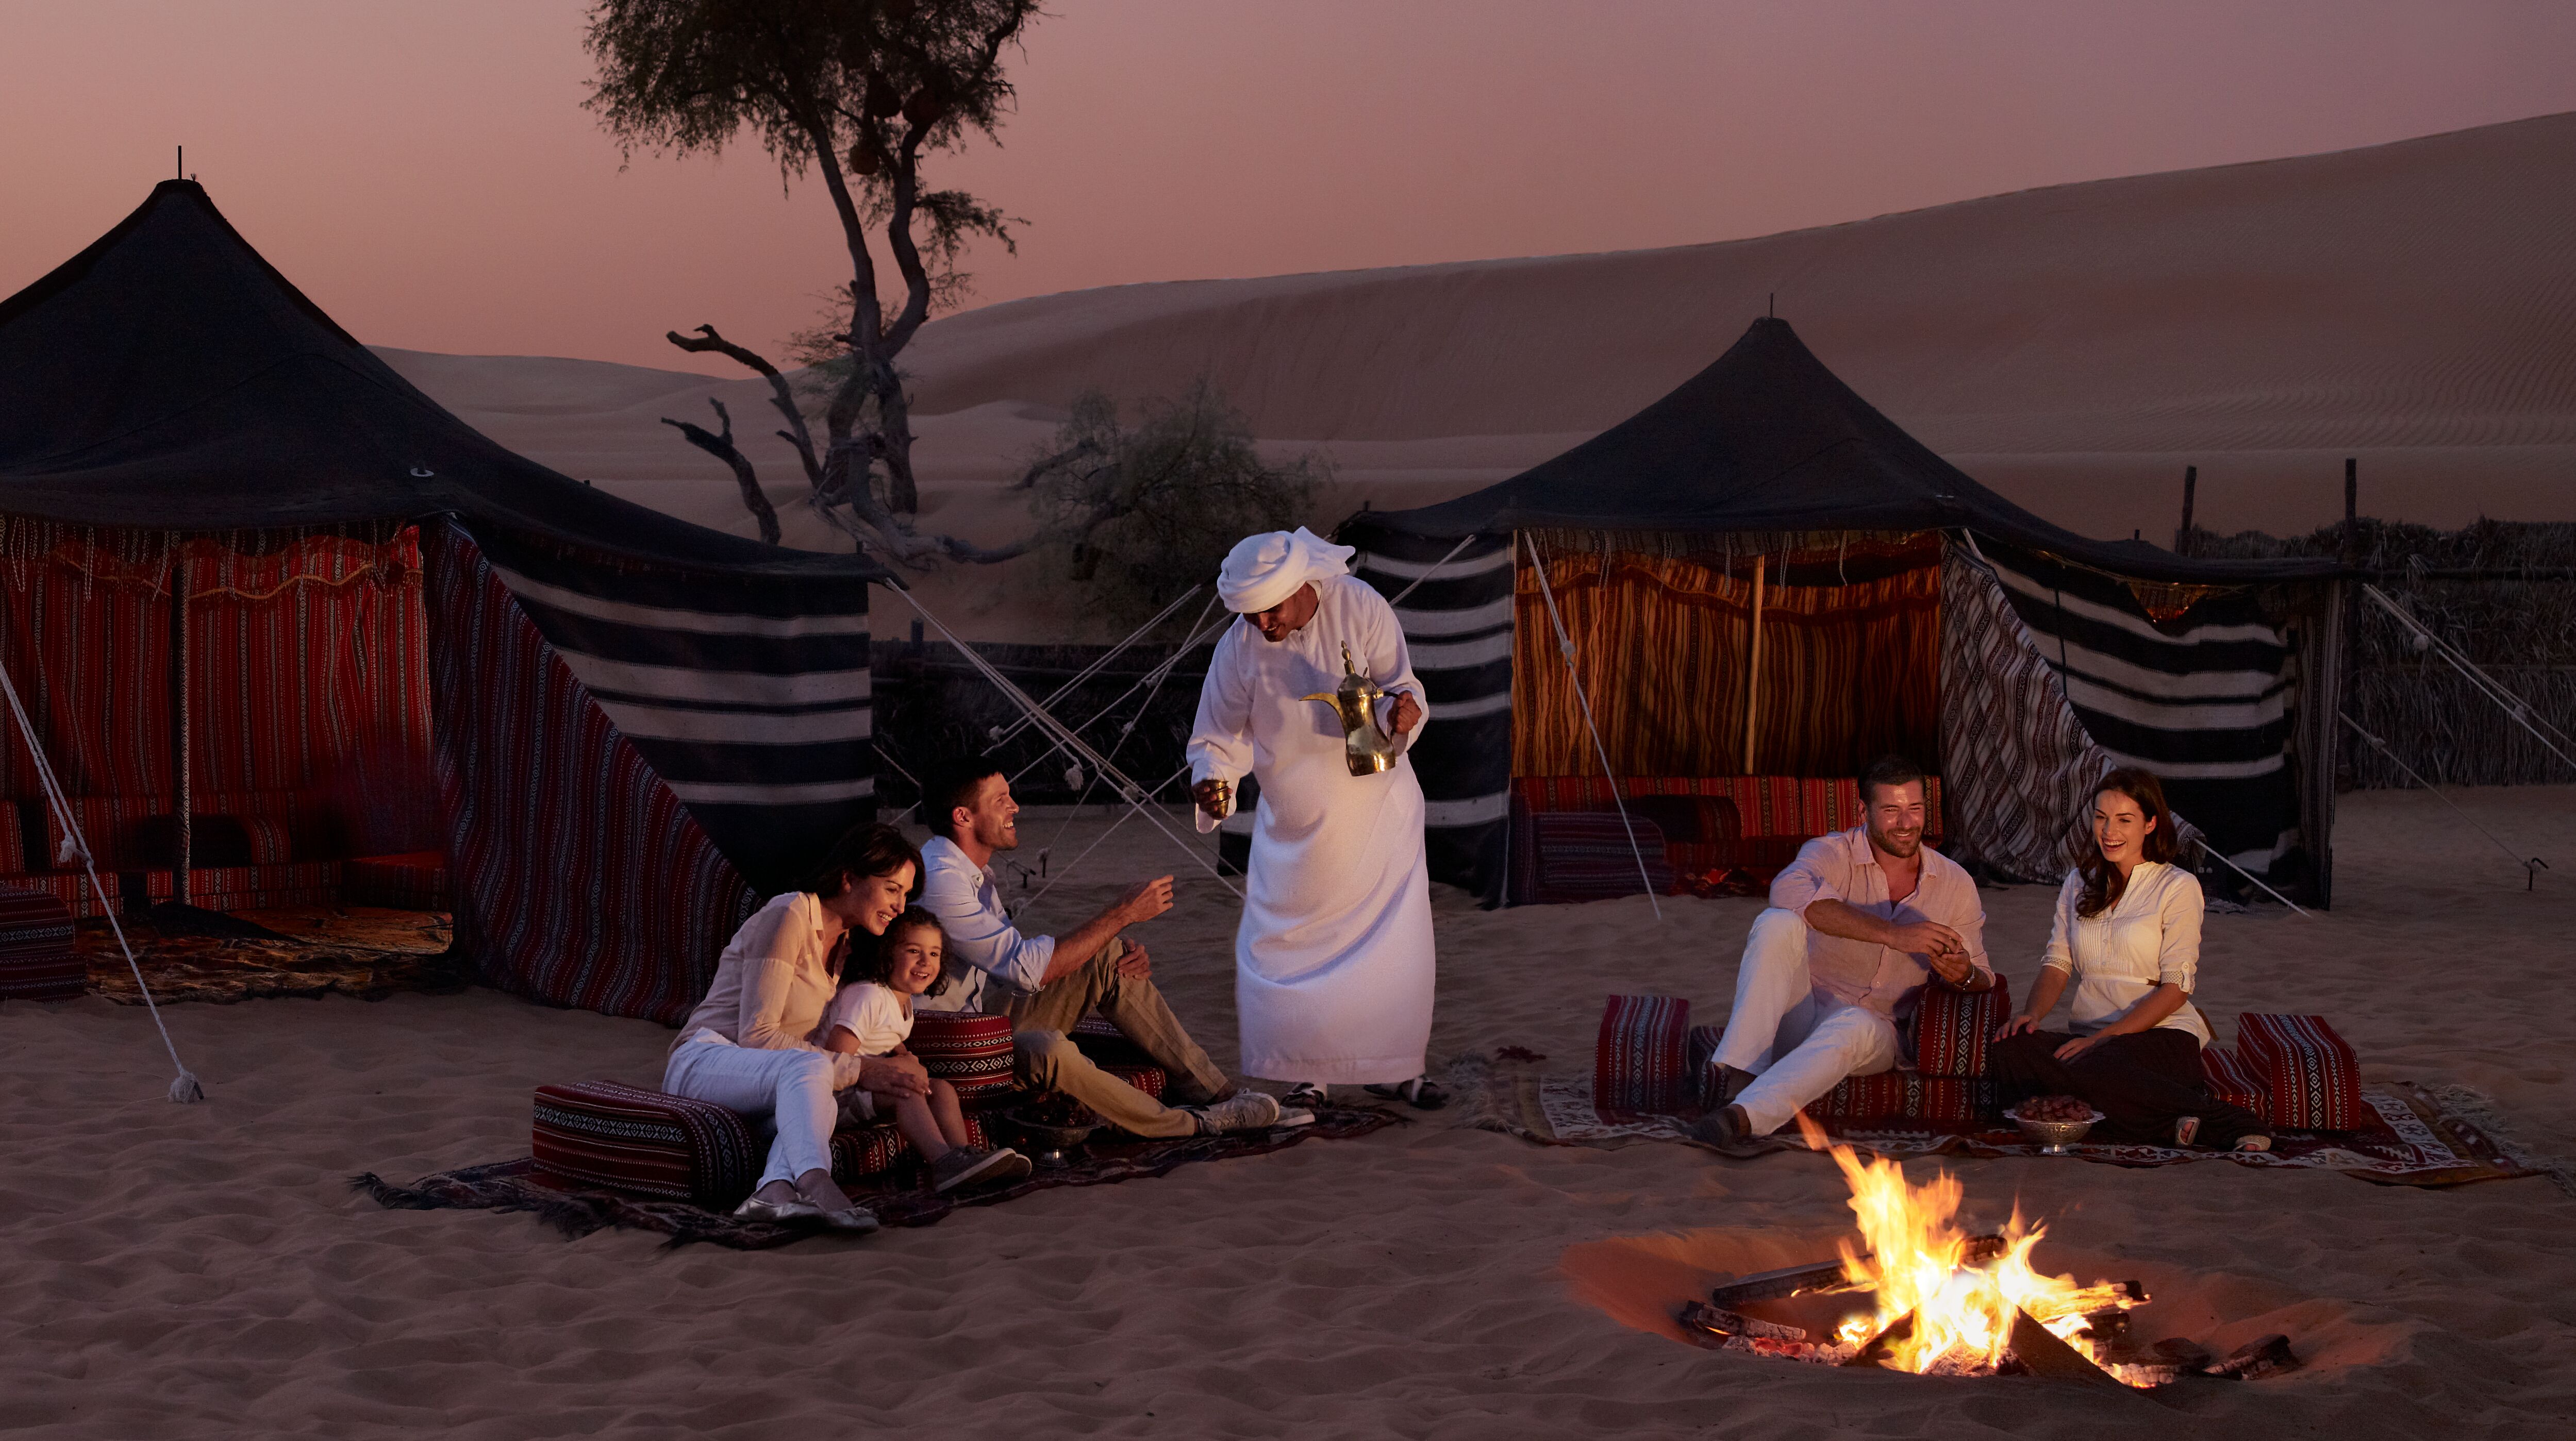 4. כפר לילות ערב - Arabian Nights Village